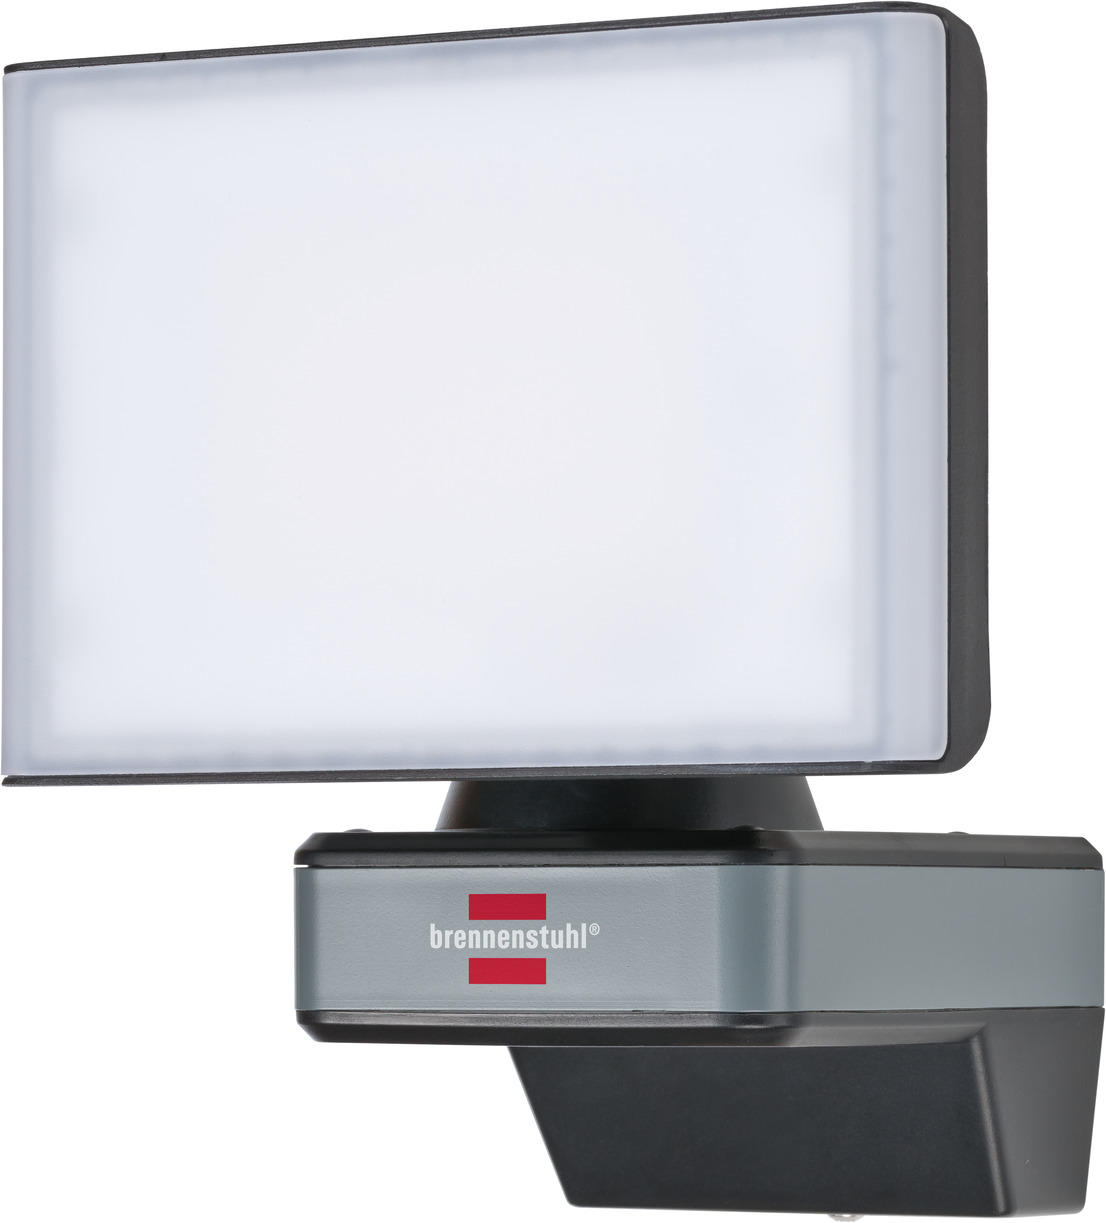 brennenstuhl®Connect LED WiFi Spotlight WF 2050 brennenstuhl® IP54 | 2400lm